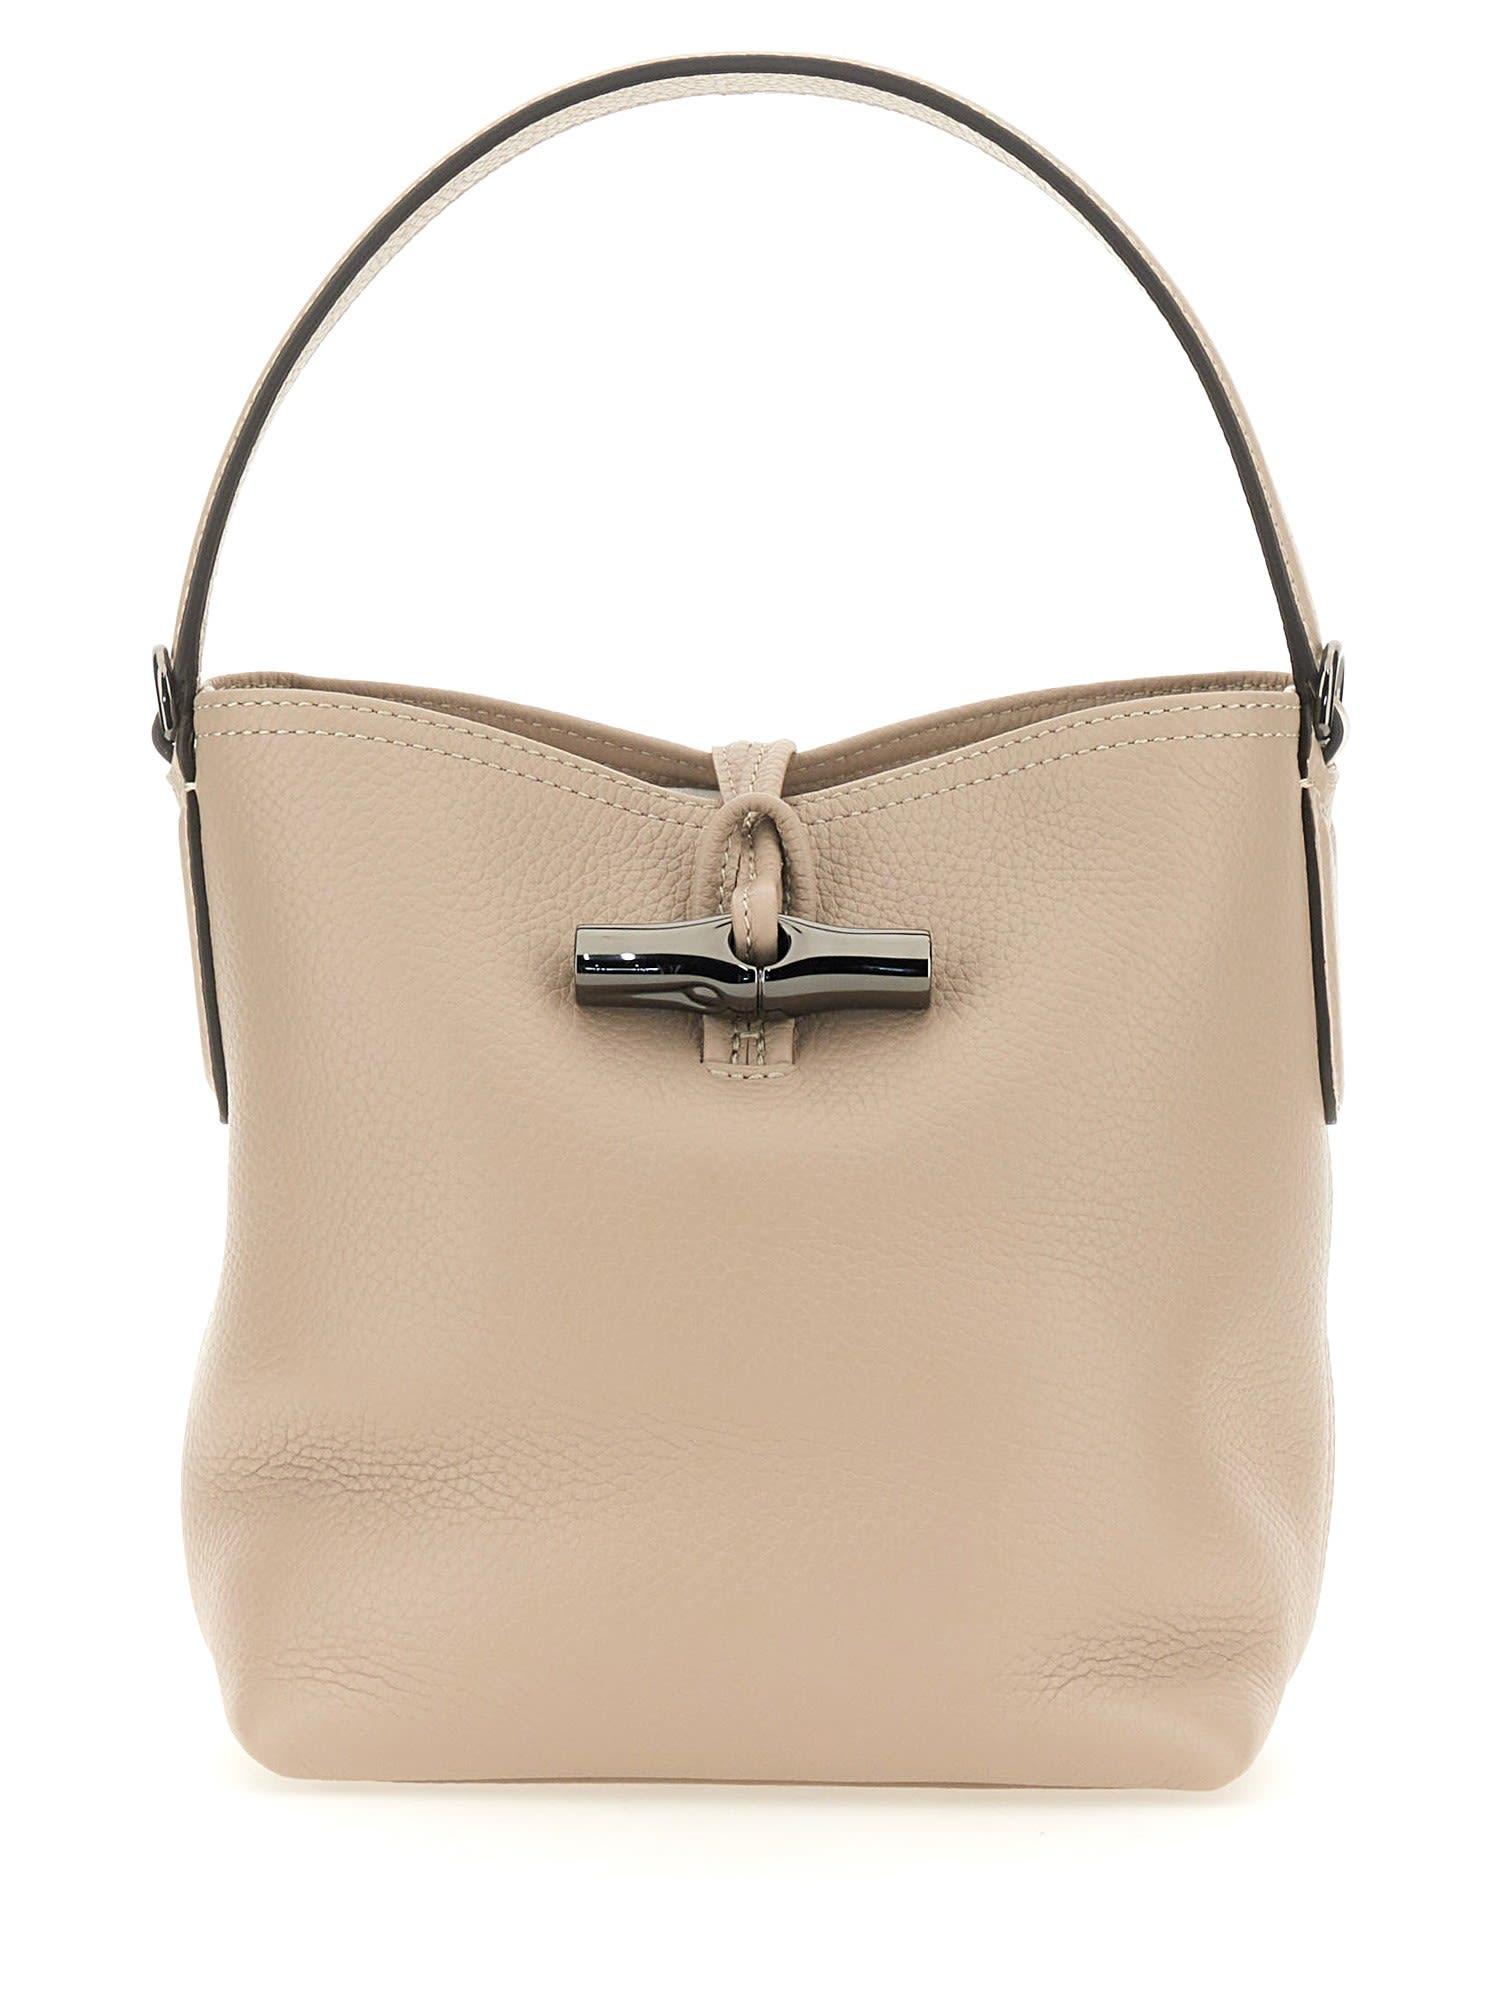 Longchamp Small Roseau Bag in Natural | Lyst